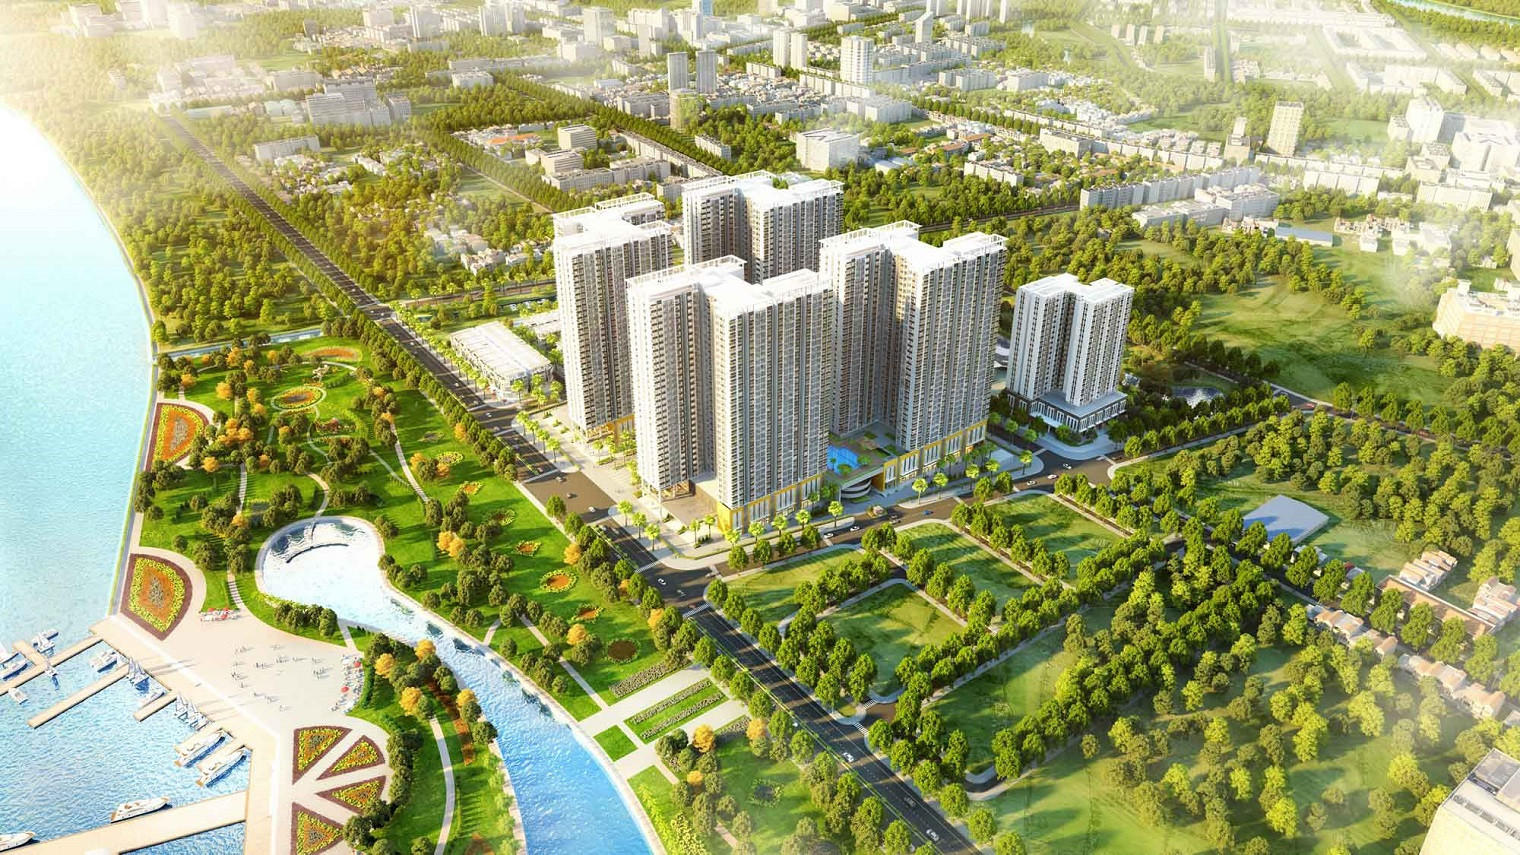 Hưng Thịnh Land lên kế hoạch bán ra thị trường 10.000 căn hộ